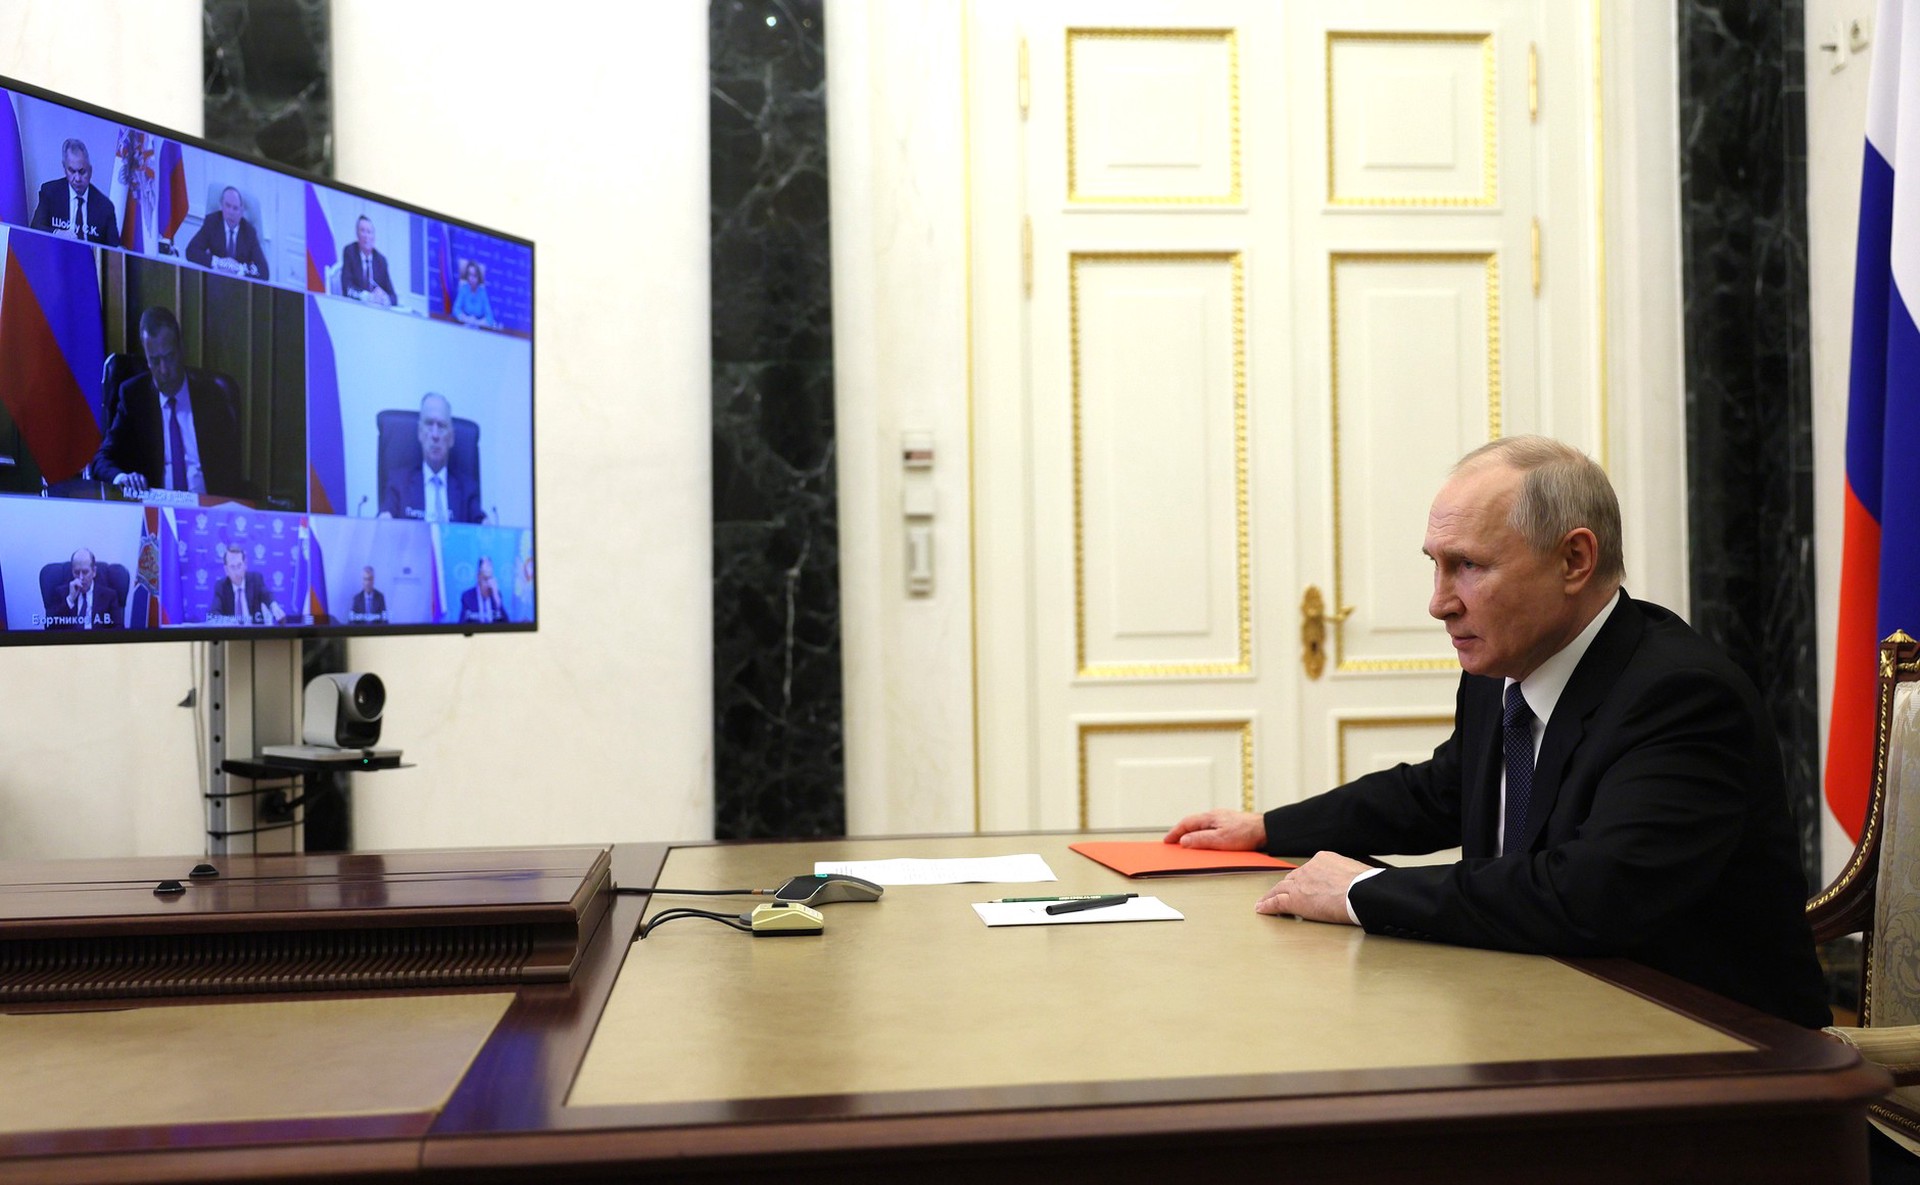 Путин: У стран, устраивающих сложности для России, ничего не выйдет 